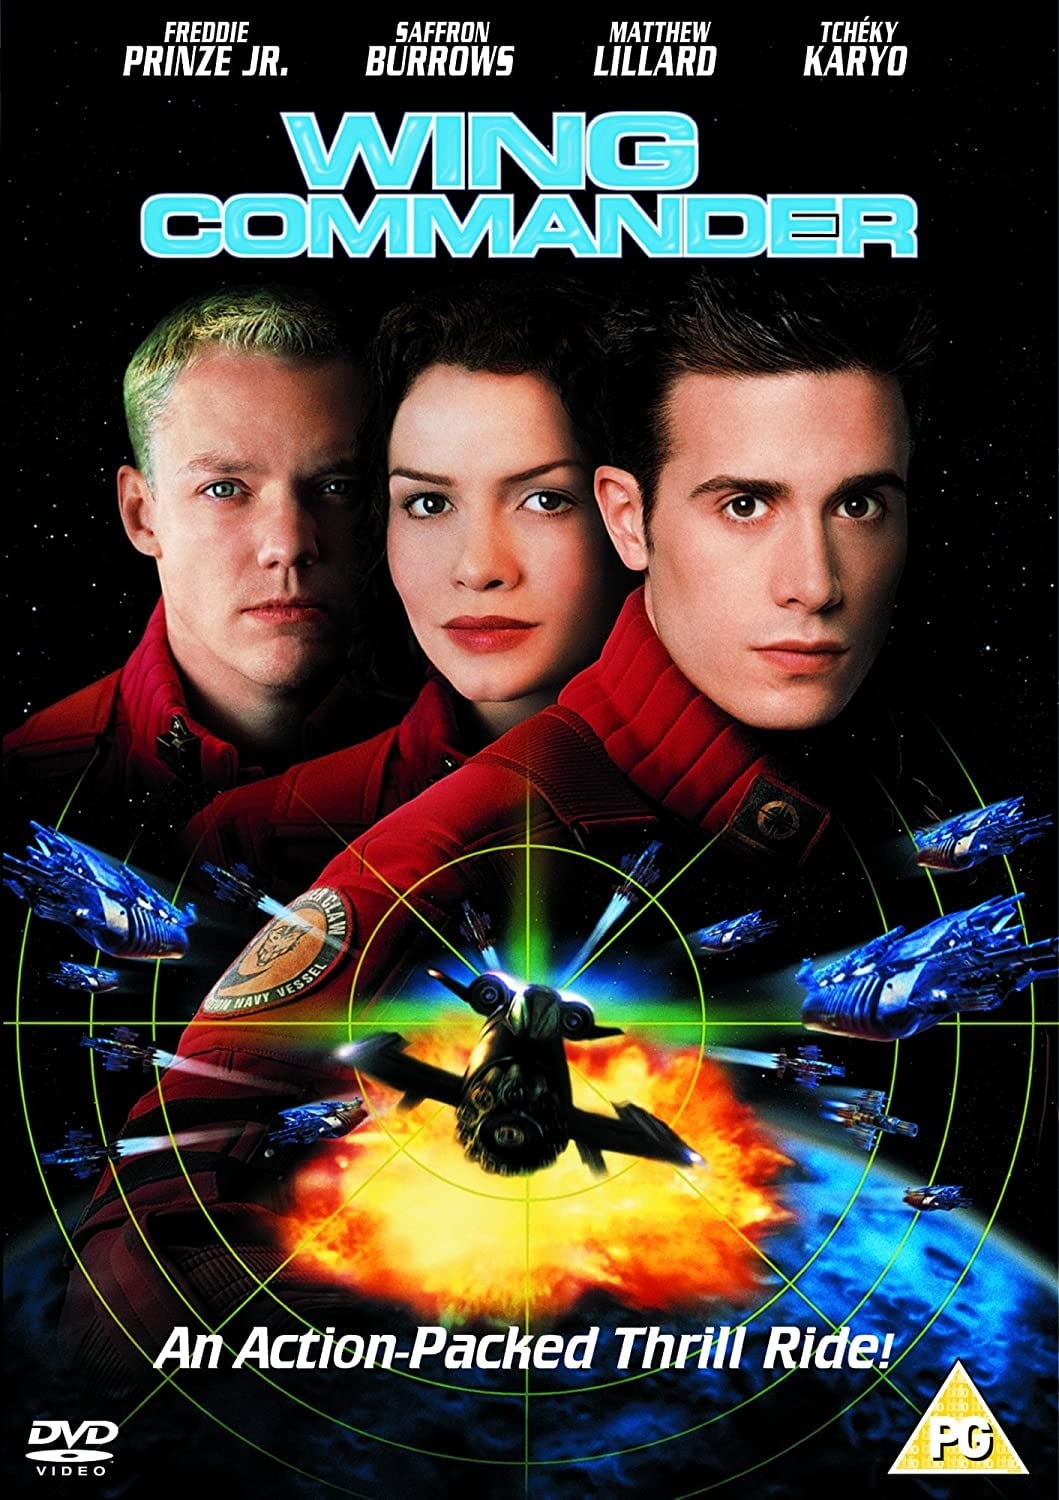 Affiche du film Wing Commander poster